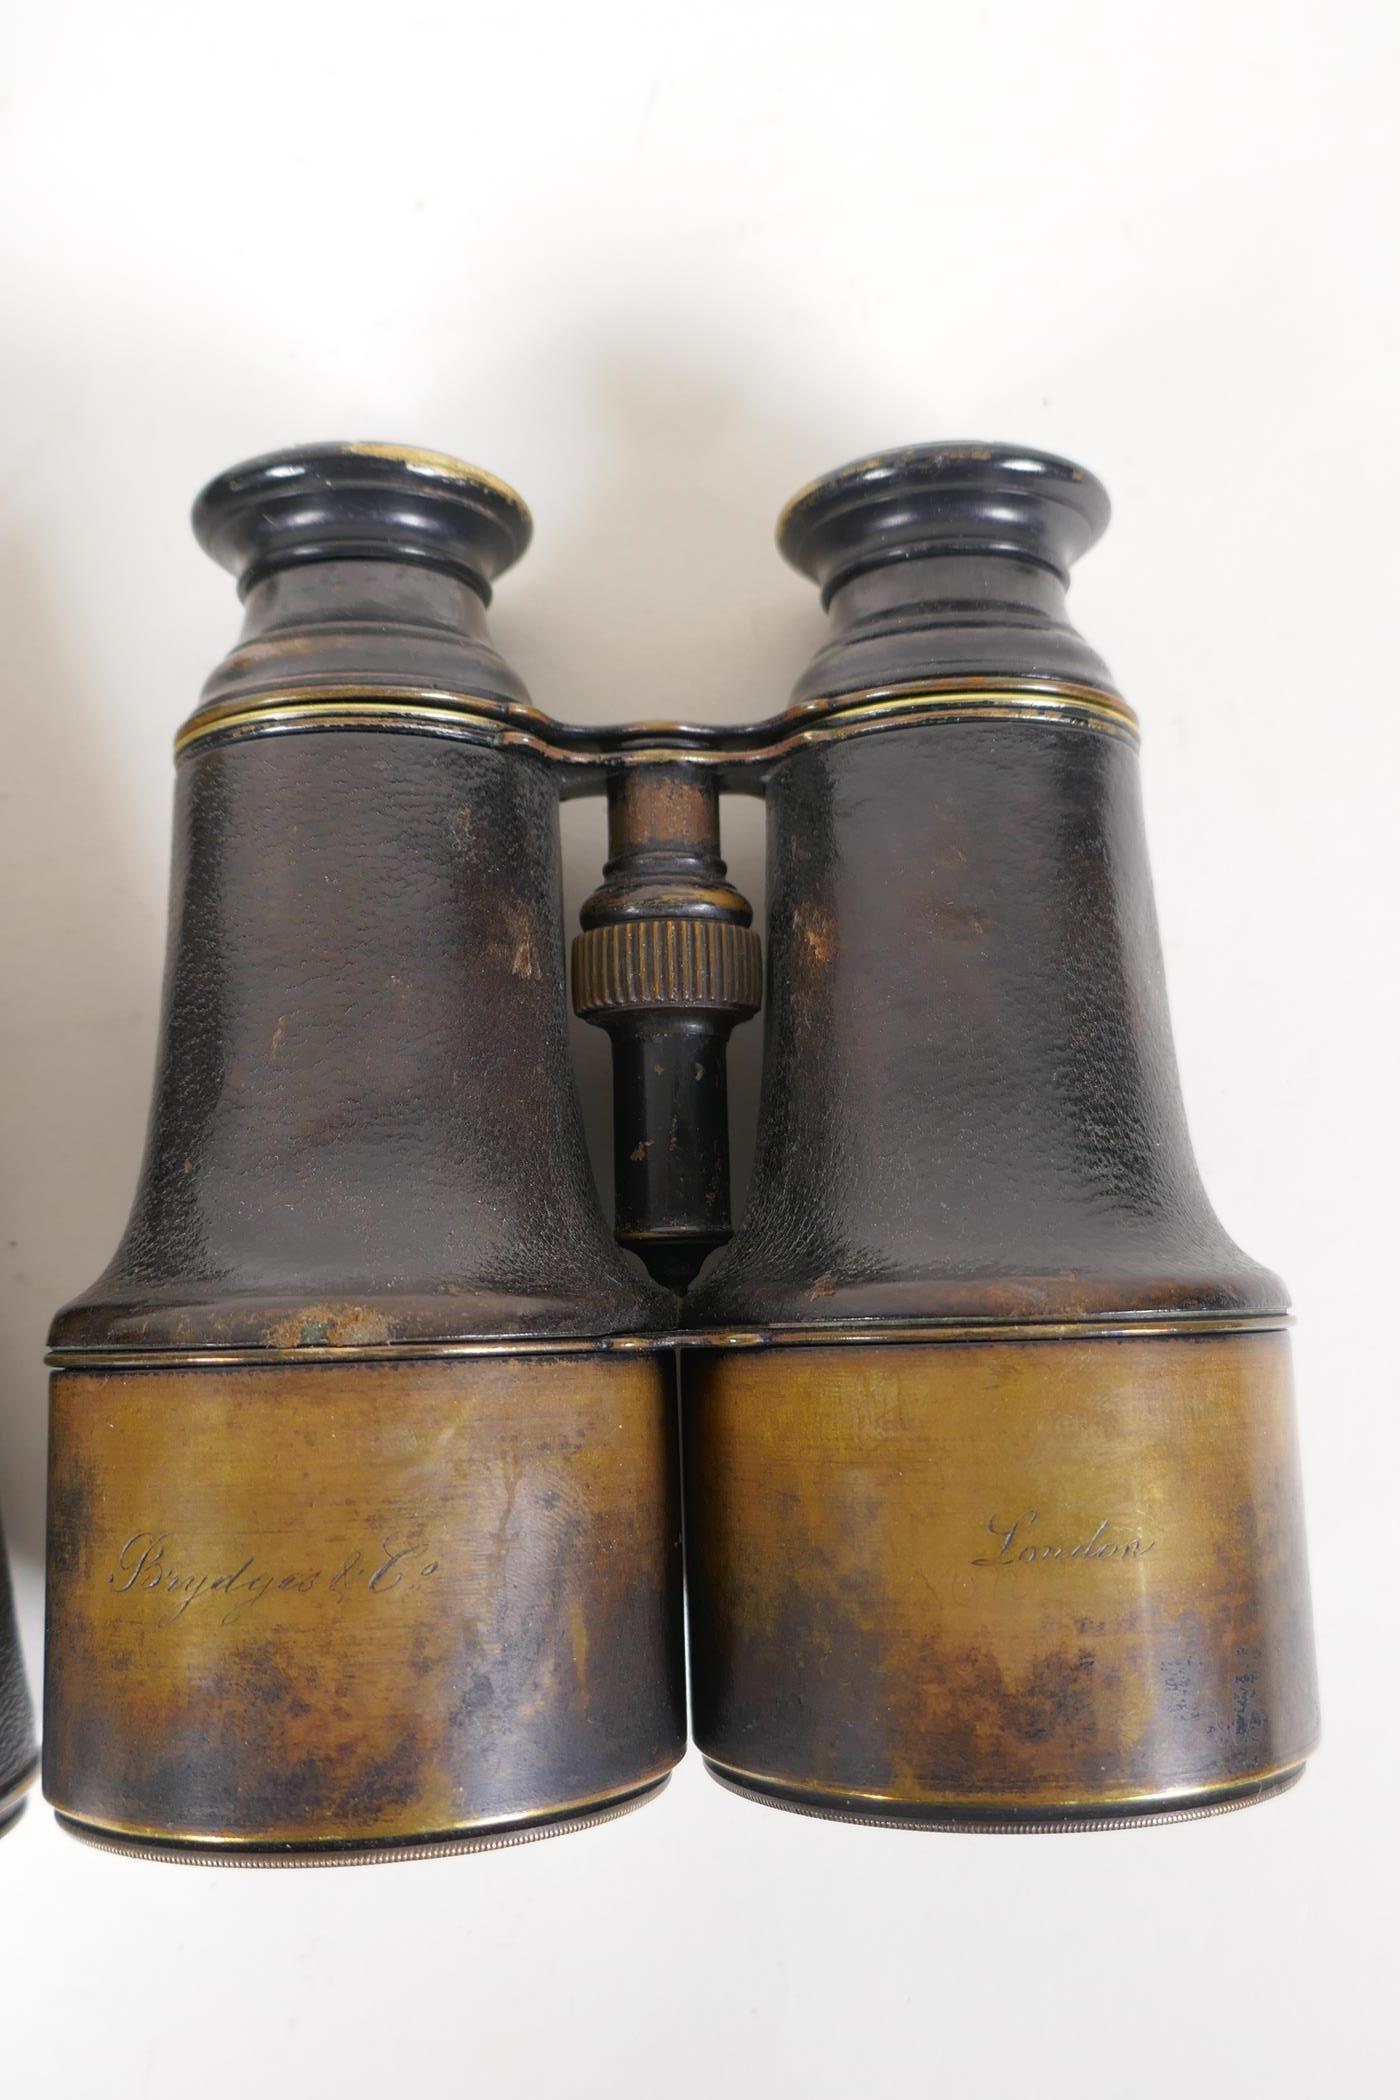 Three pairs of C19th binoculars - Image 2 of 4